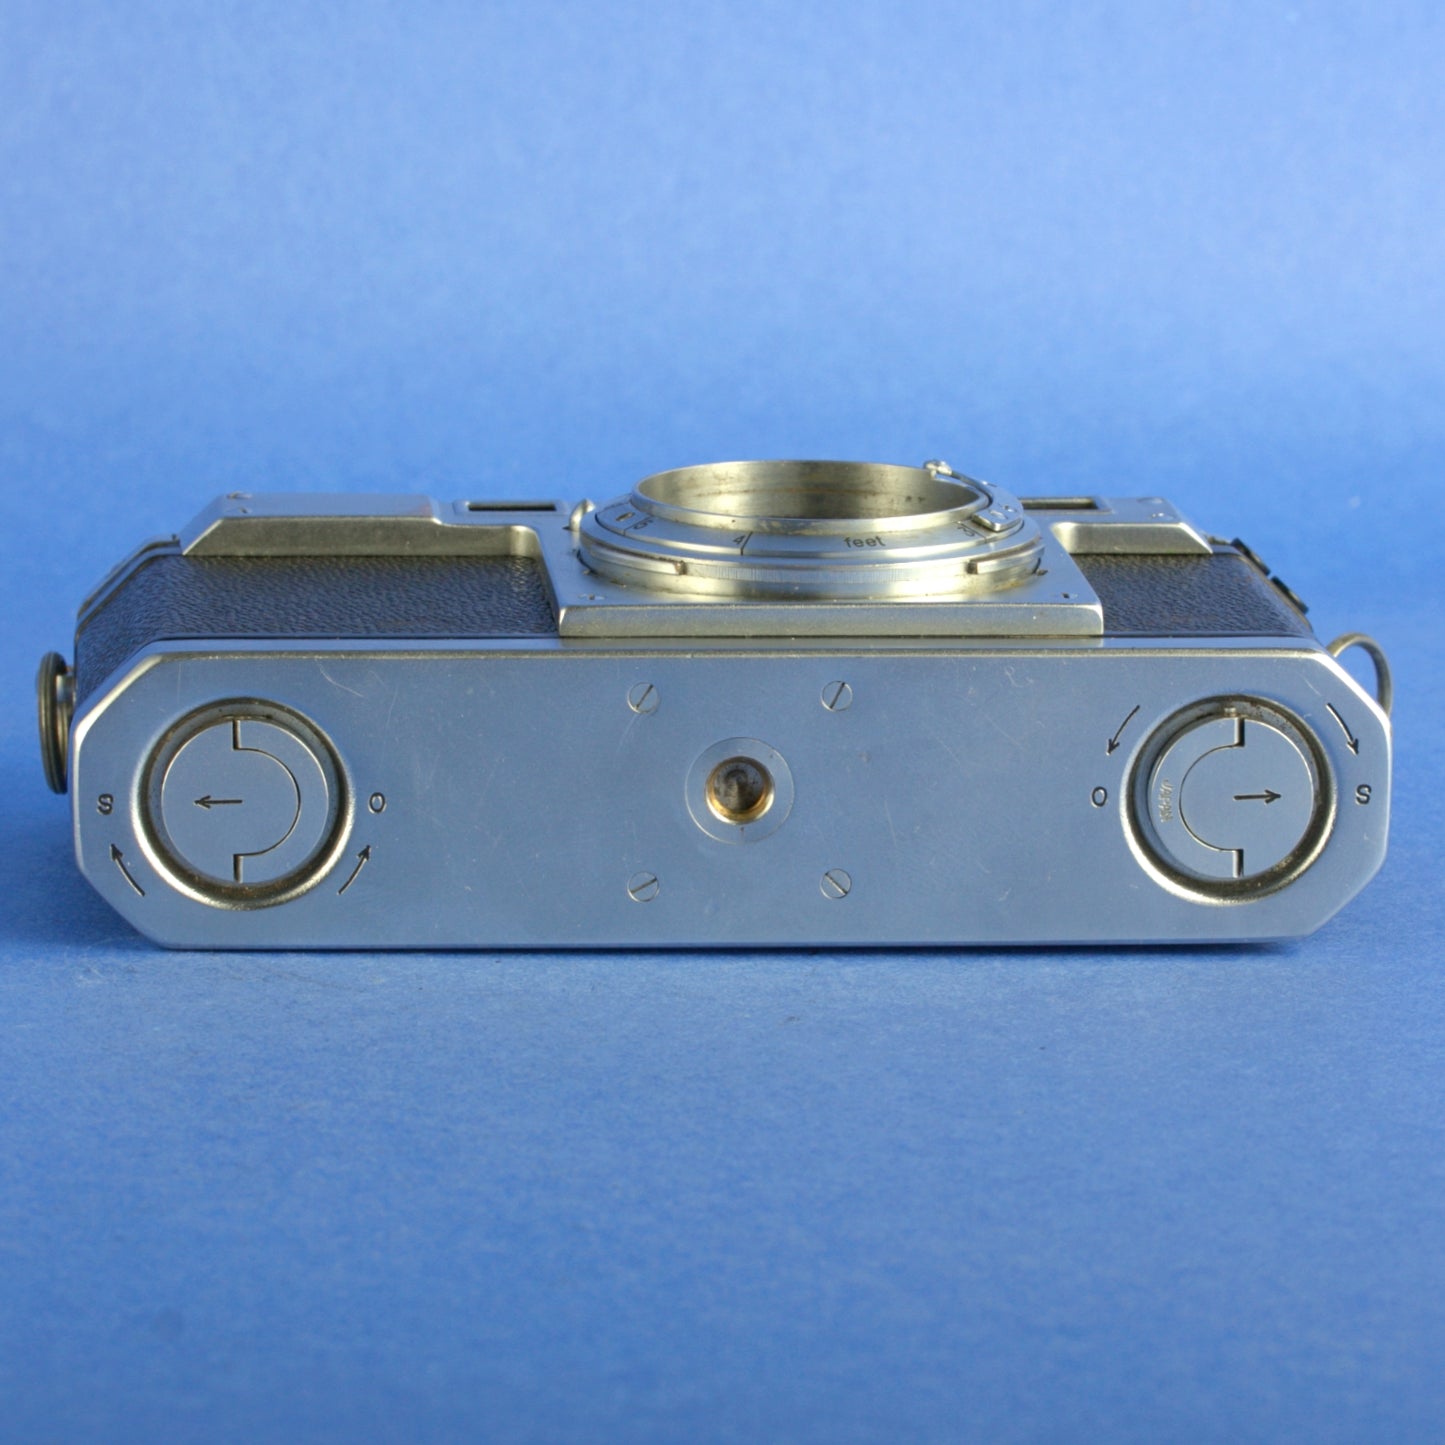 Nikon S Rangefinder Camera 8 Digit Serial